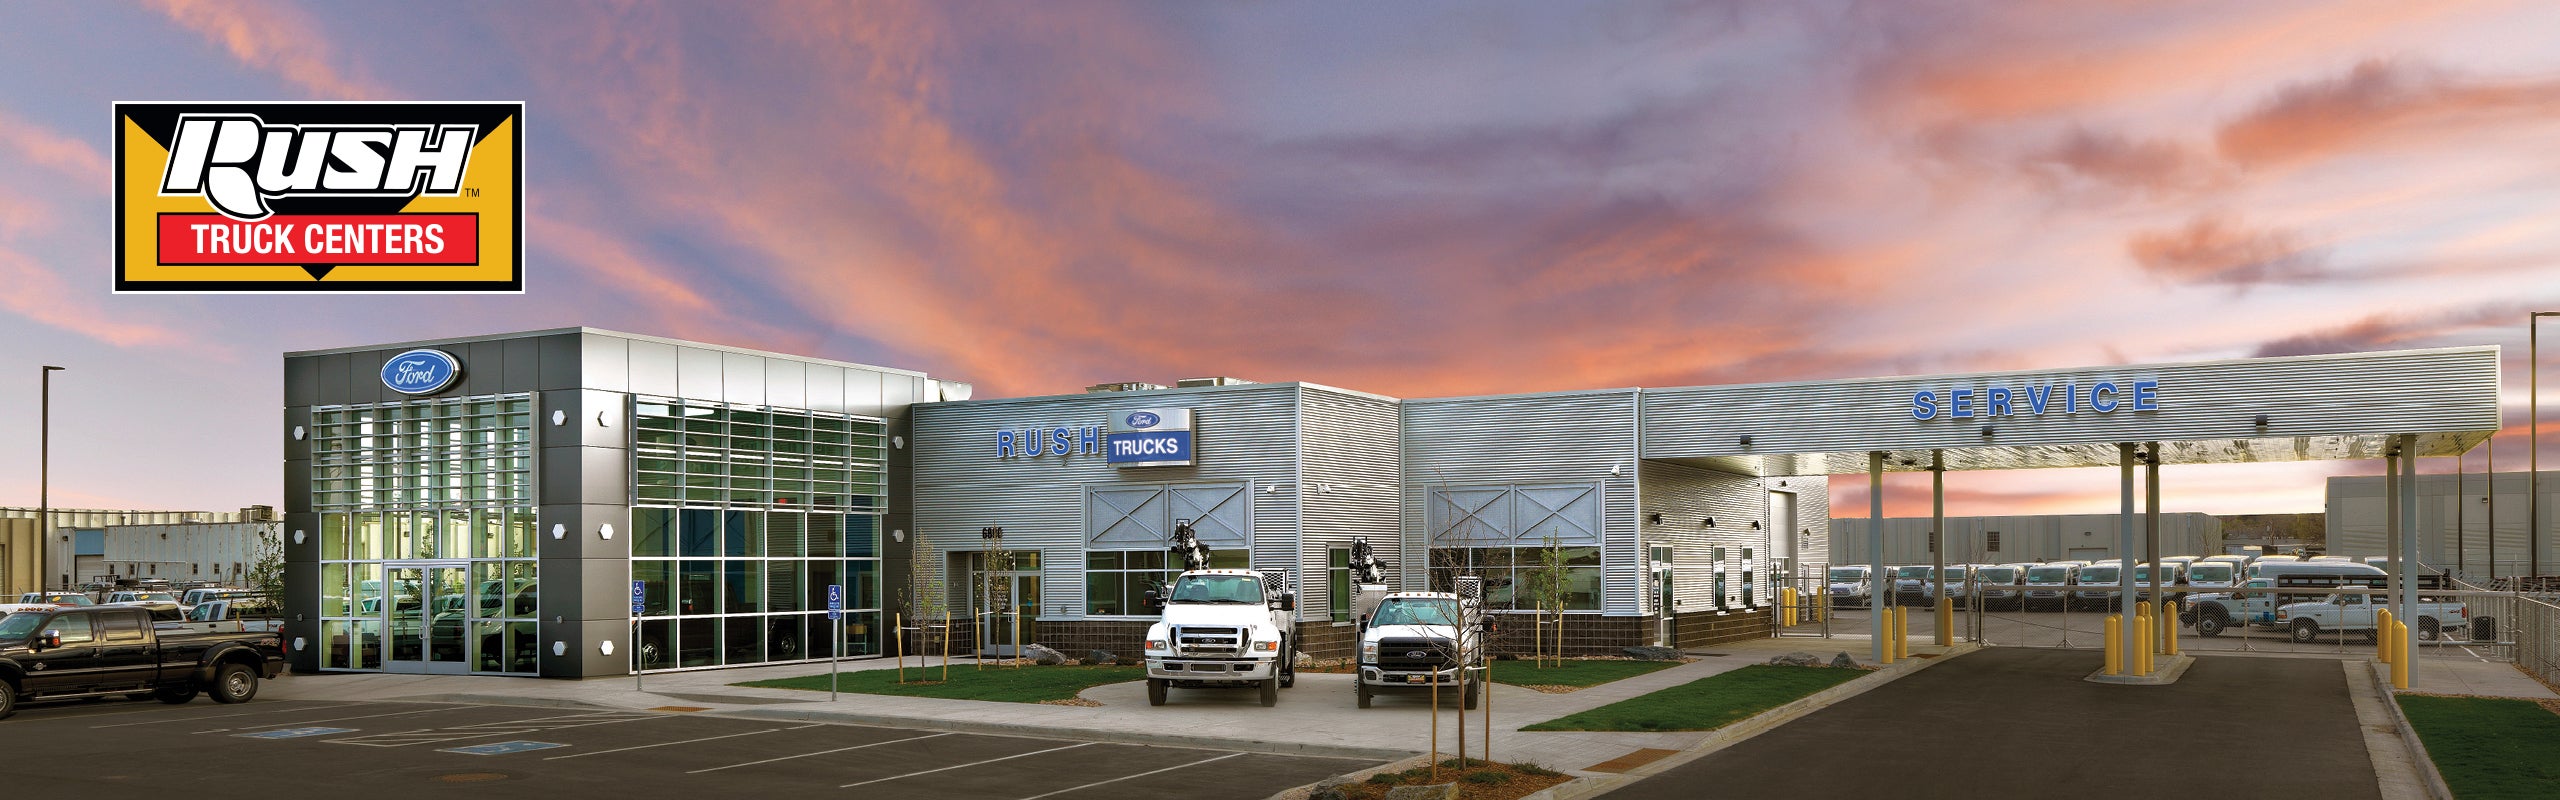 Rush Truck Center in Las Vegas, NV